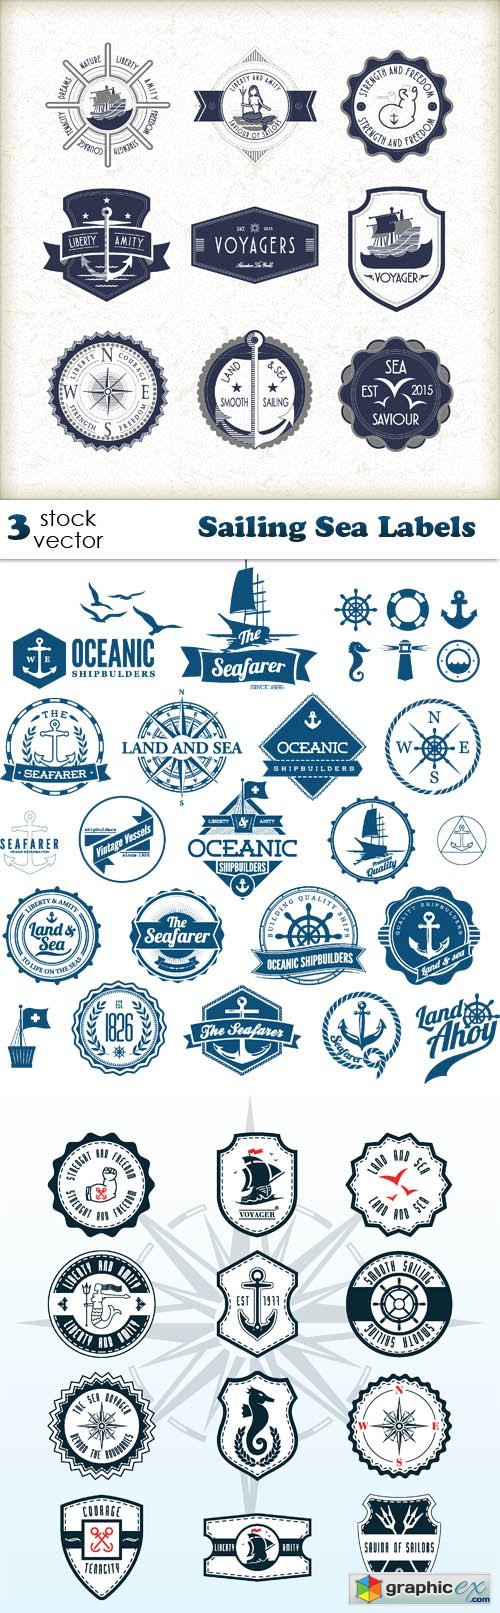 Vectors - Sailing Sea Labels